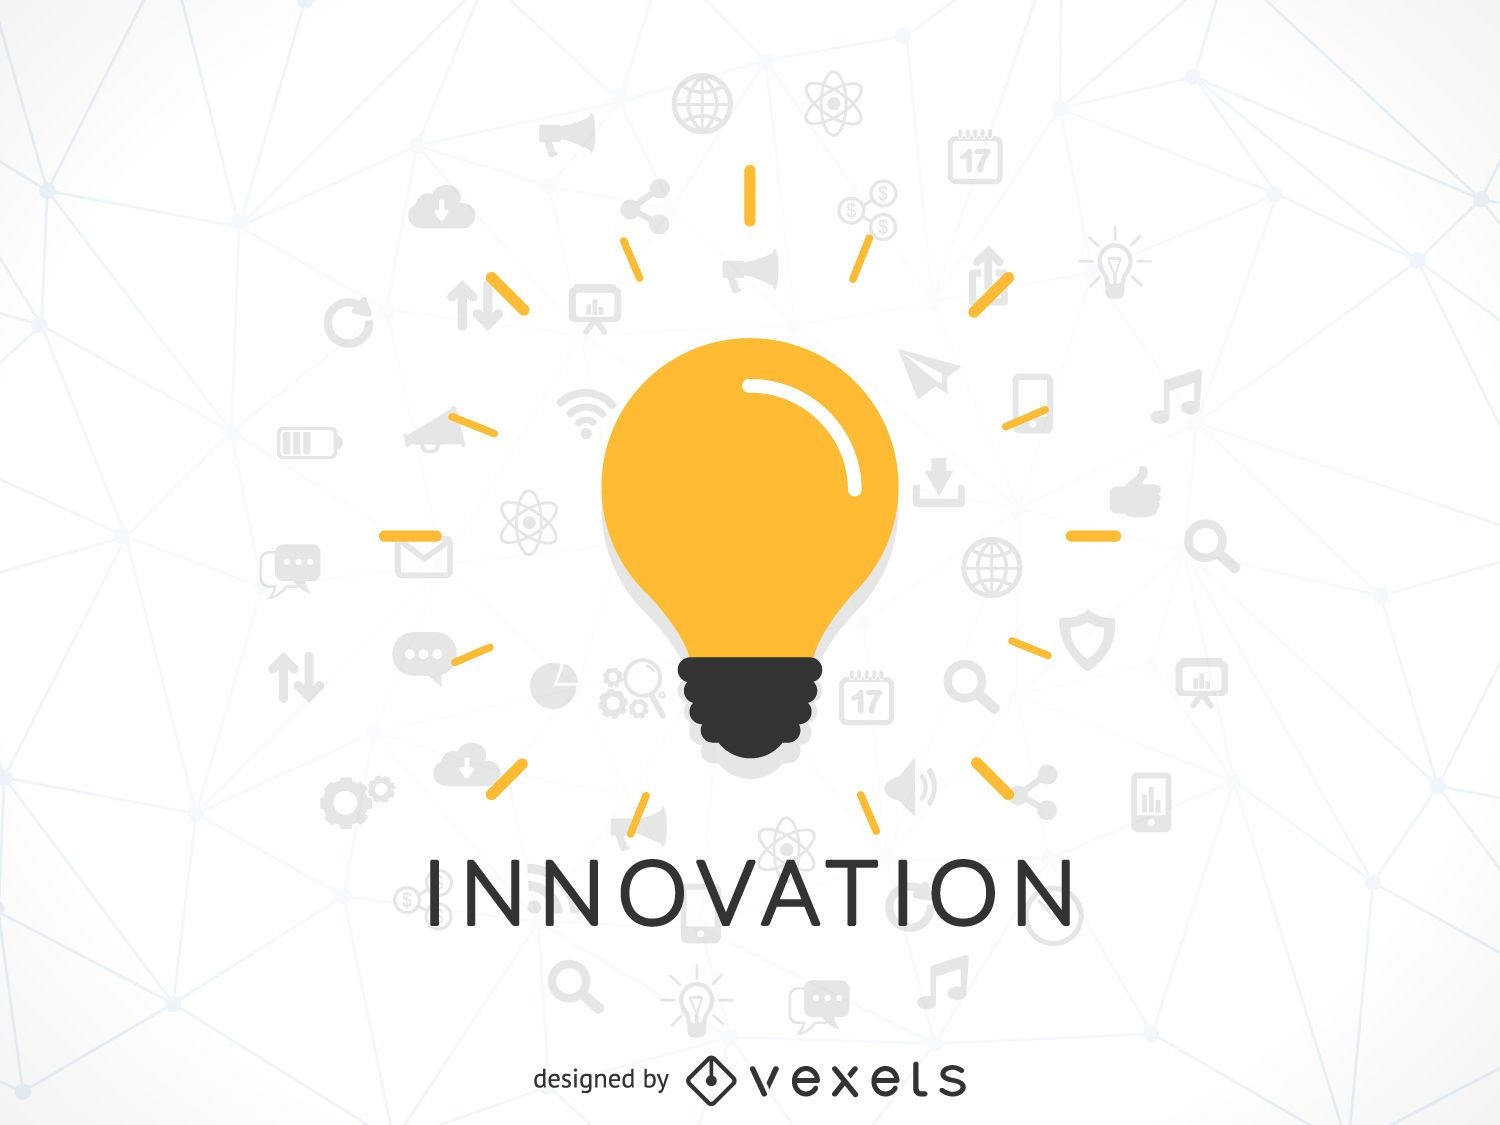 Innovation concept illustration